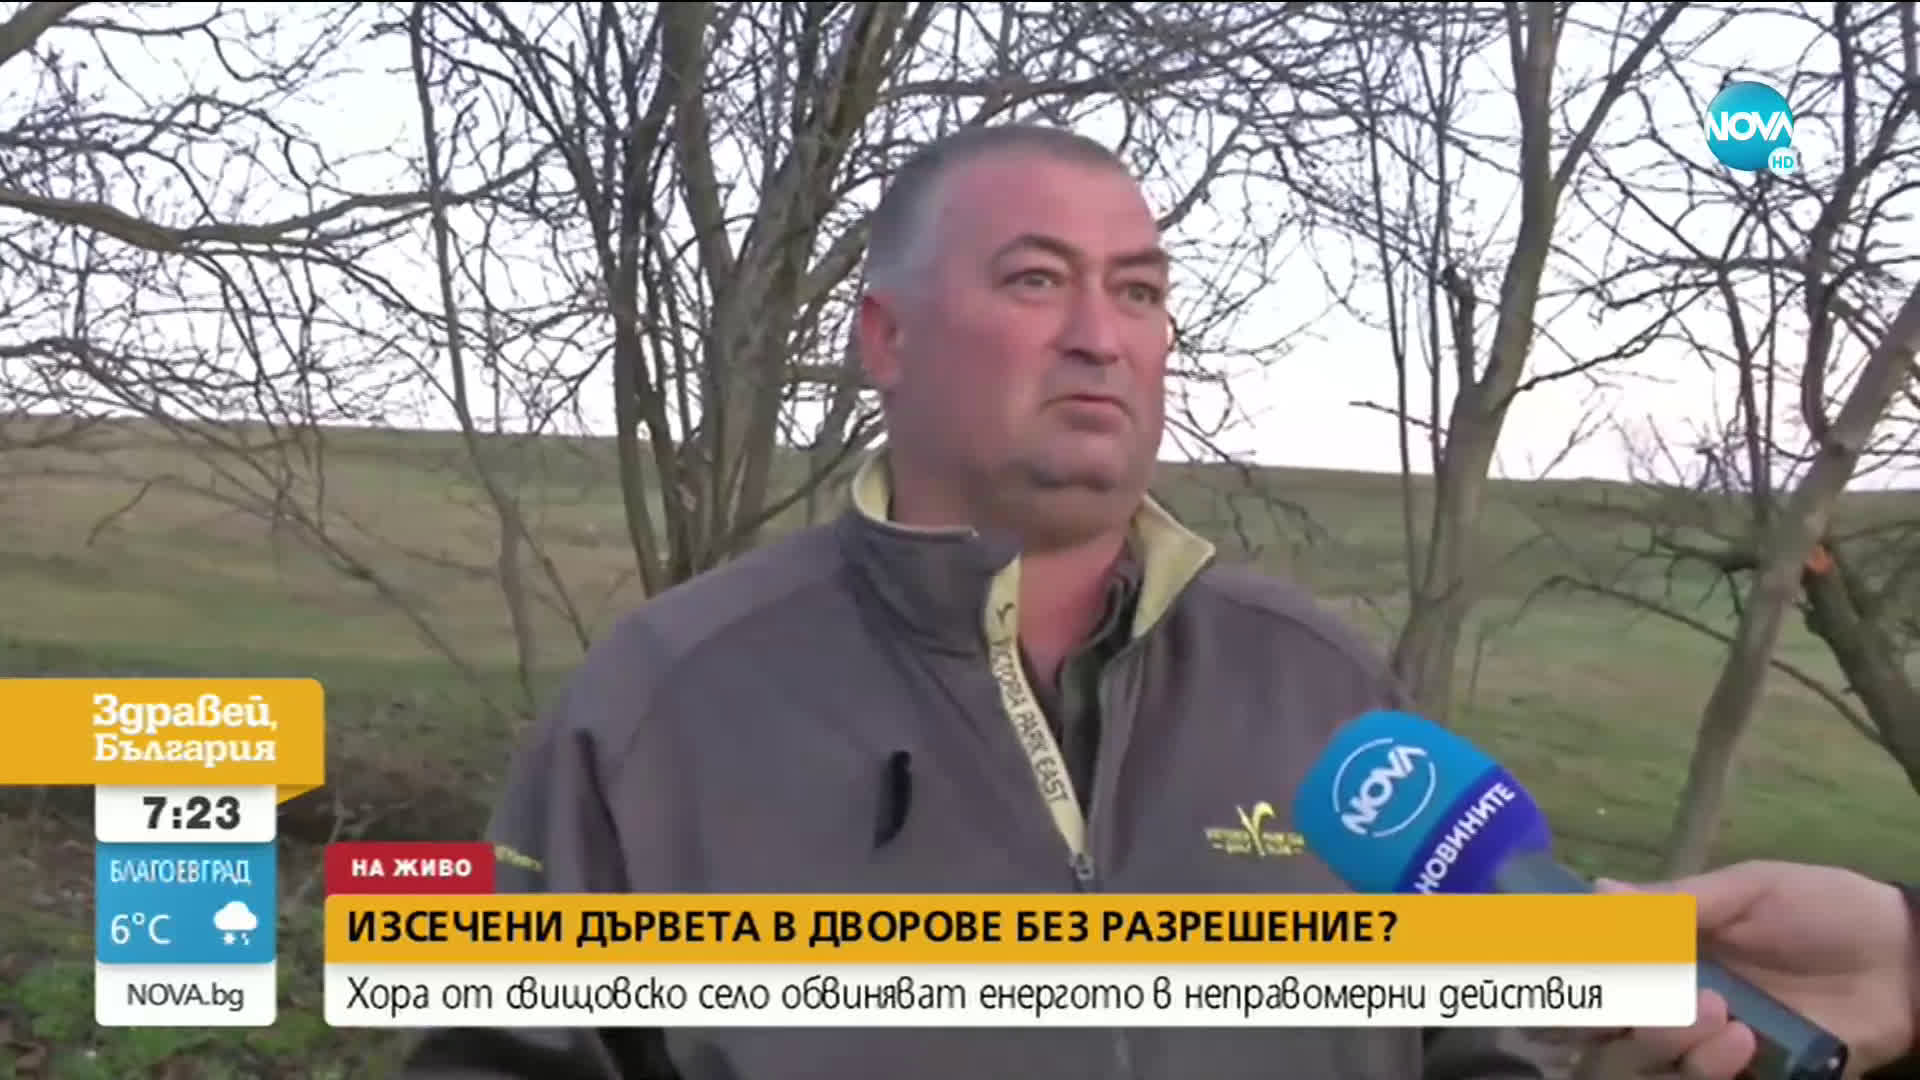 Жители на свищовско село обвиняват Енергото в неправомерно изсичане на дървета в дворовете им